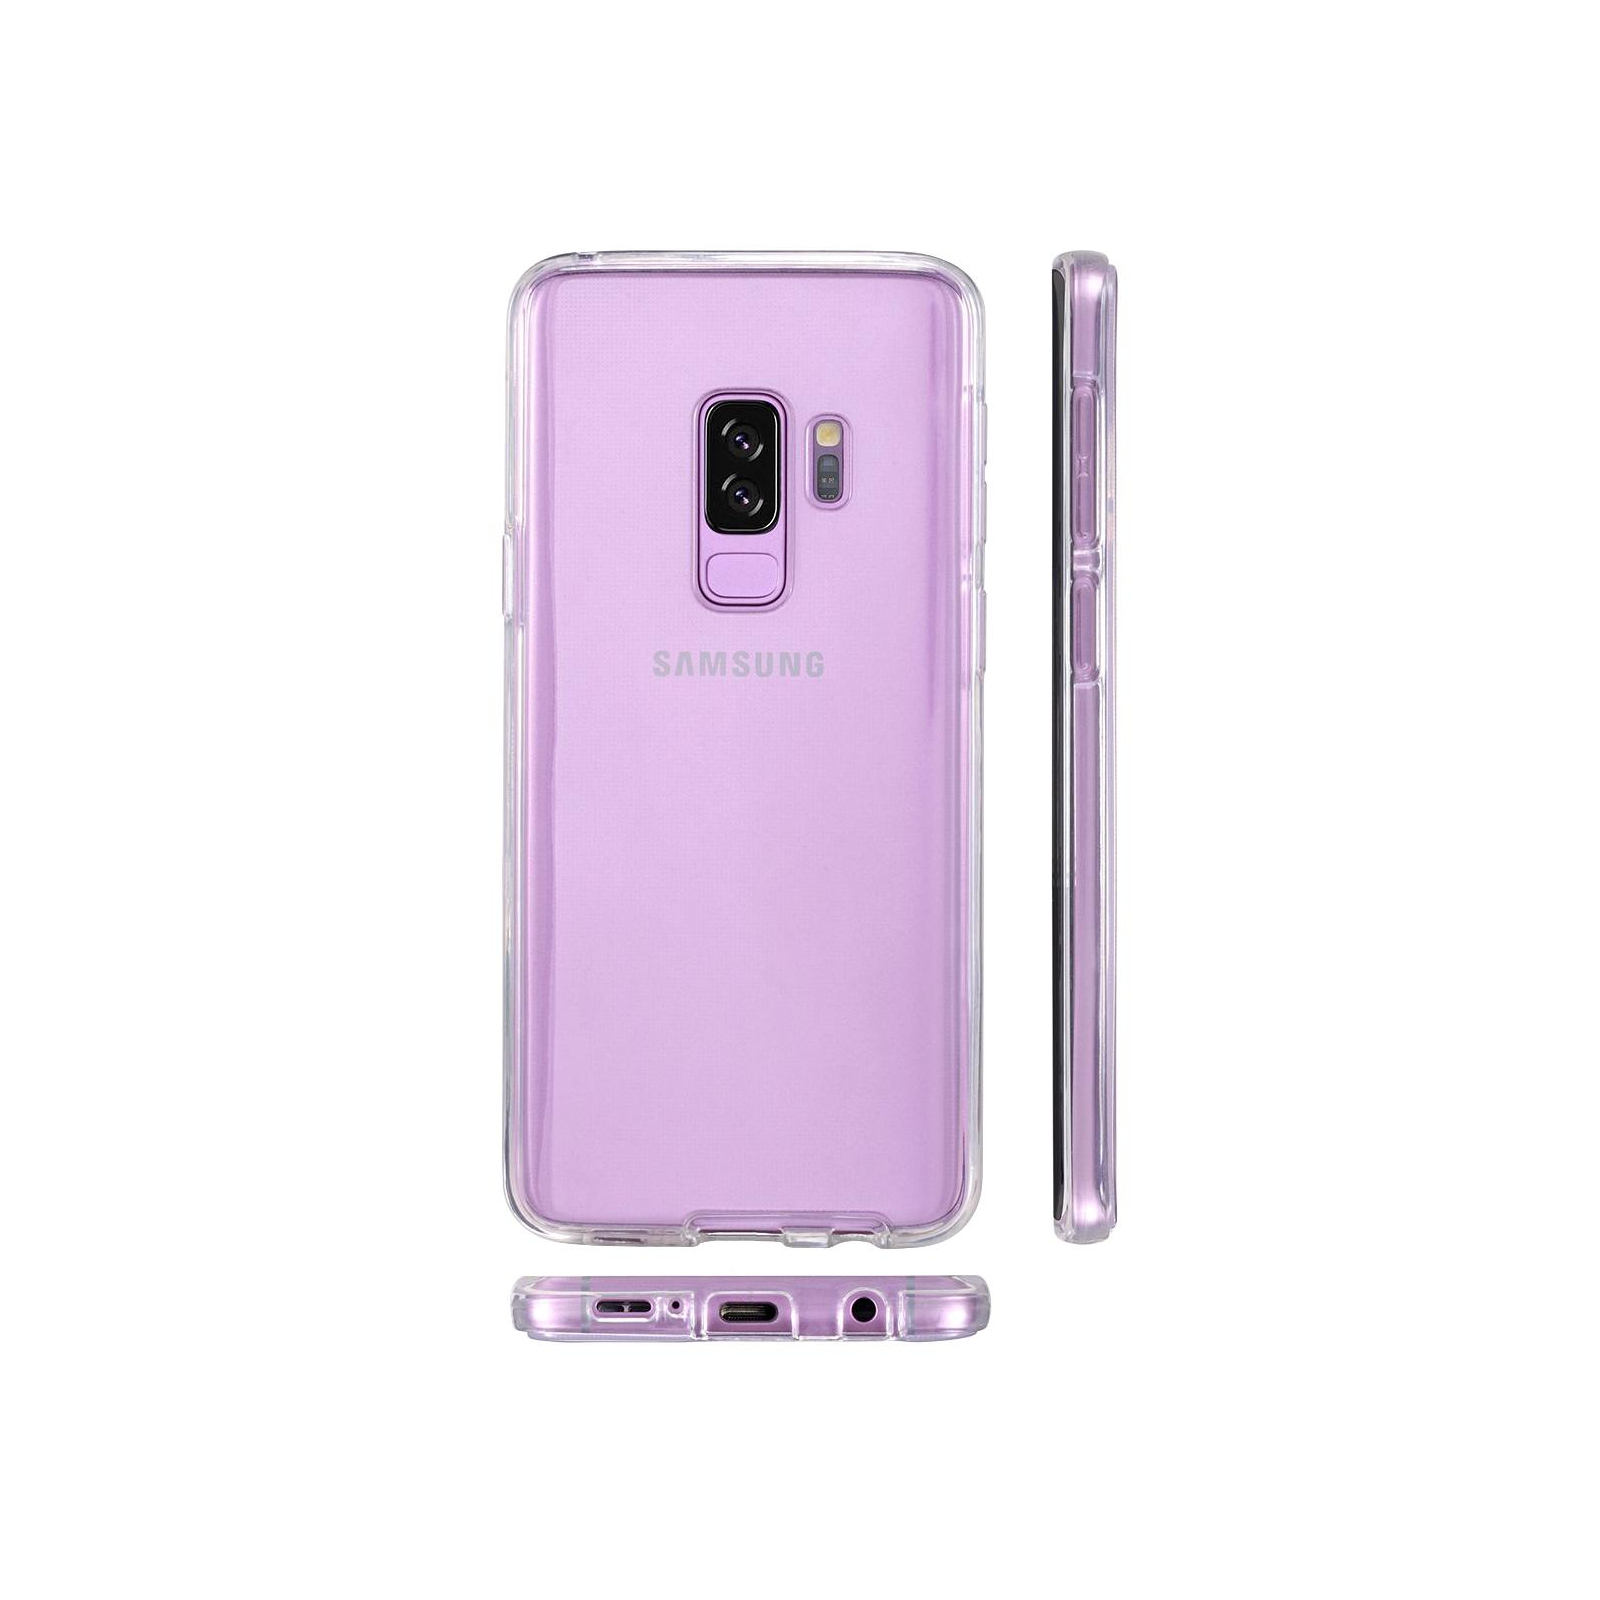 Чехол для мобильного телефона Laudtec для SAMSUNG Galaxy S9 Plus Clear tpu (Transperent) (LC-GS9PB) изображение 5